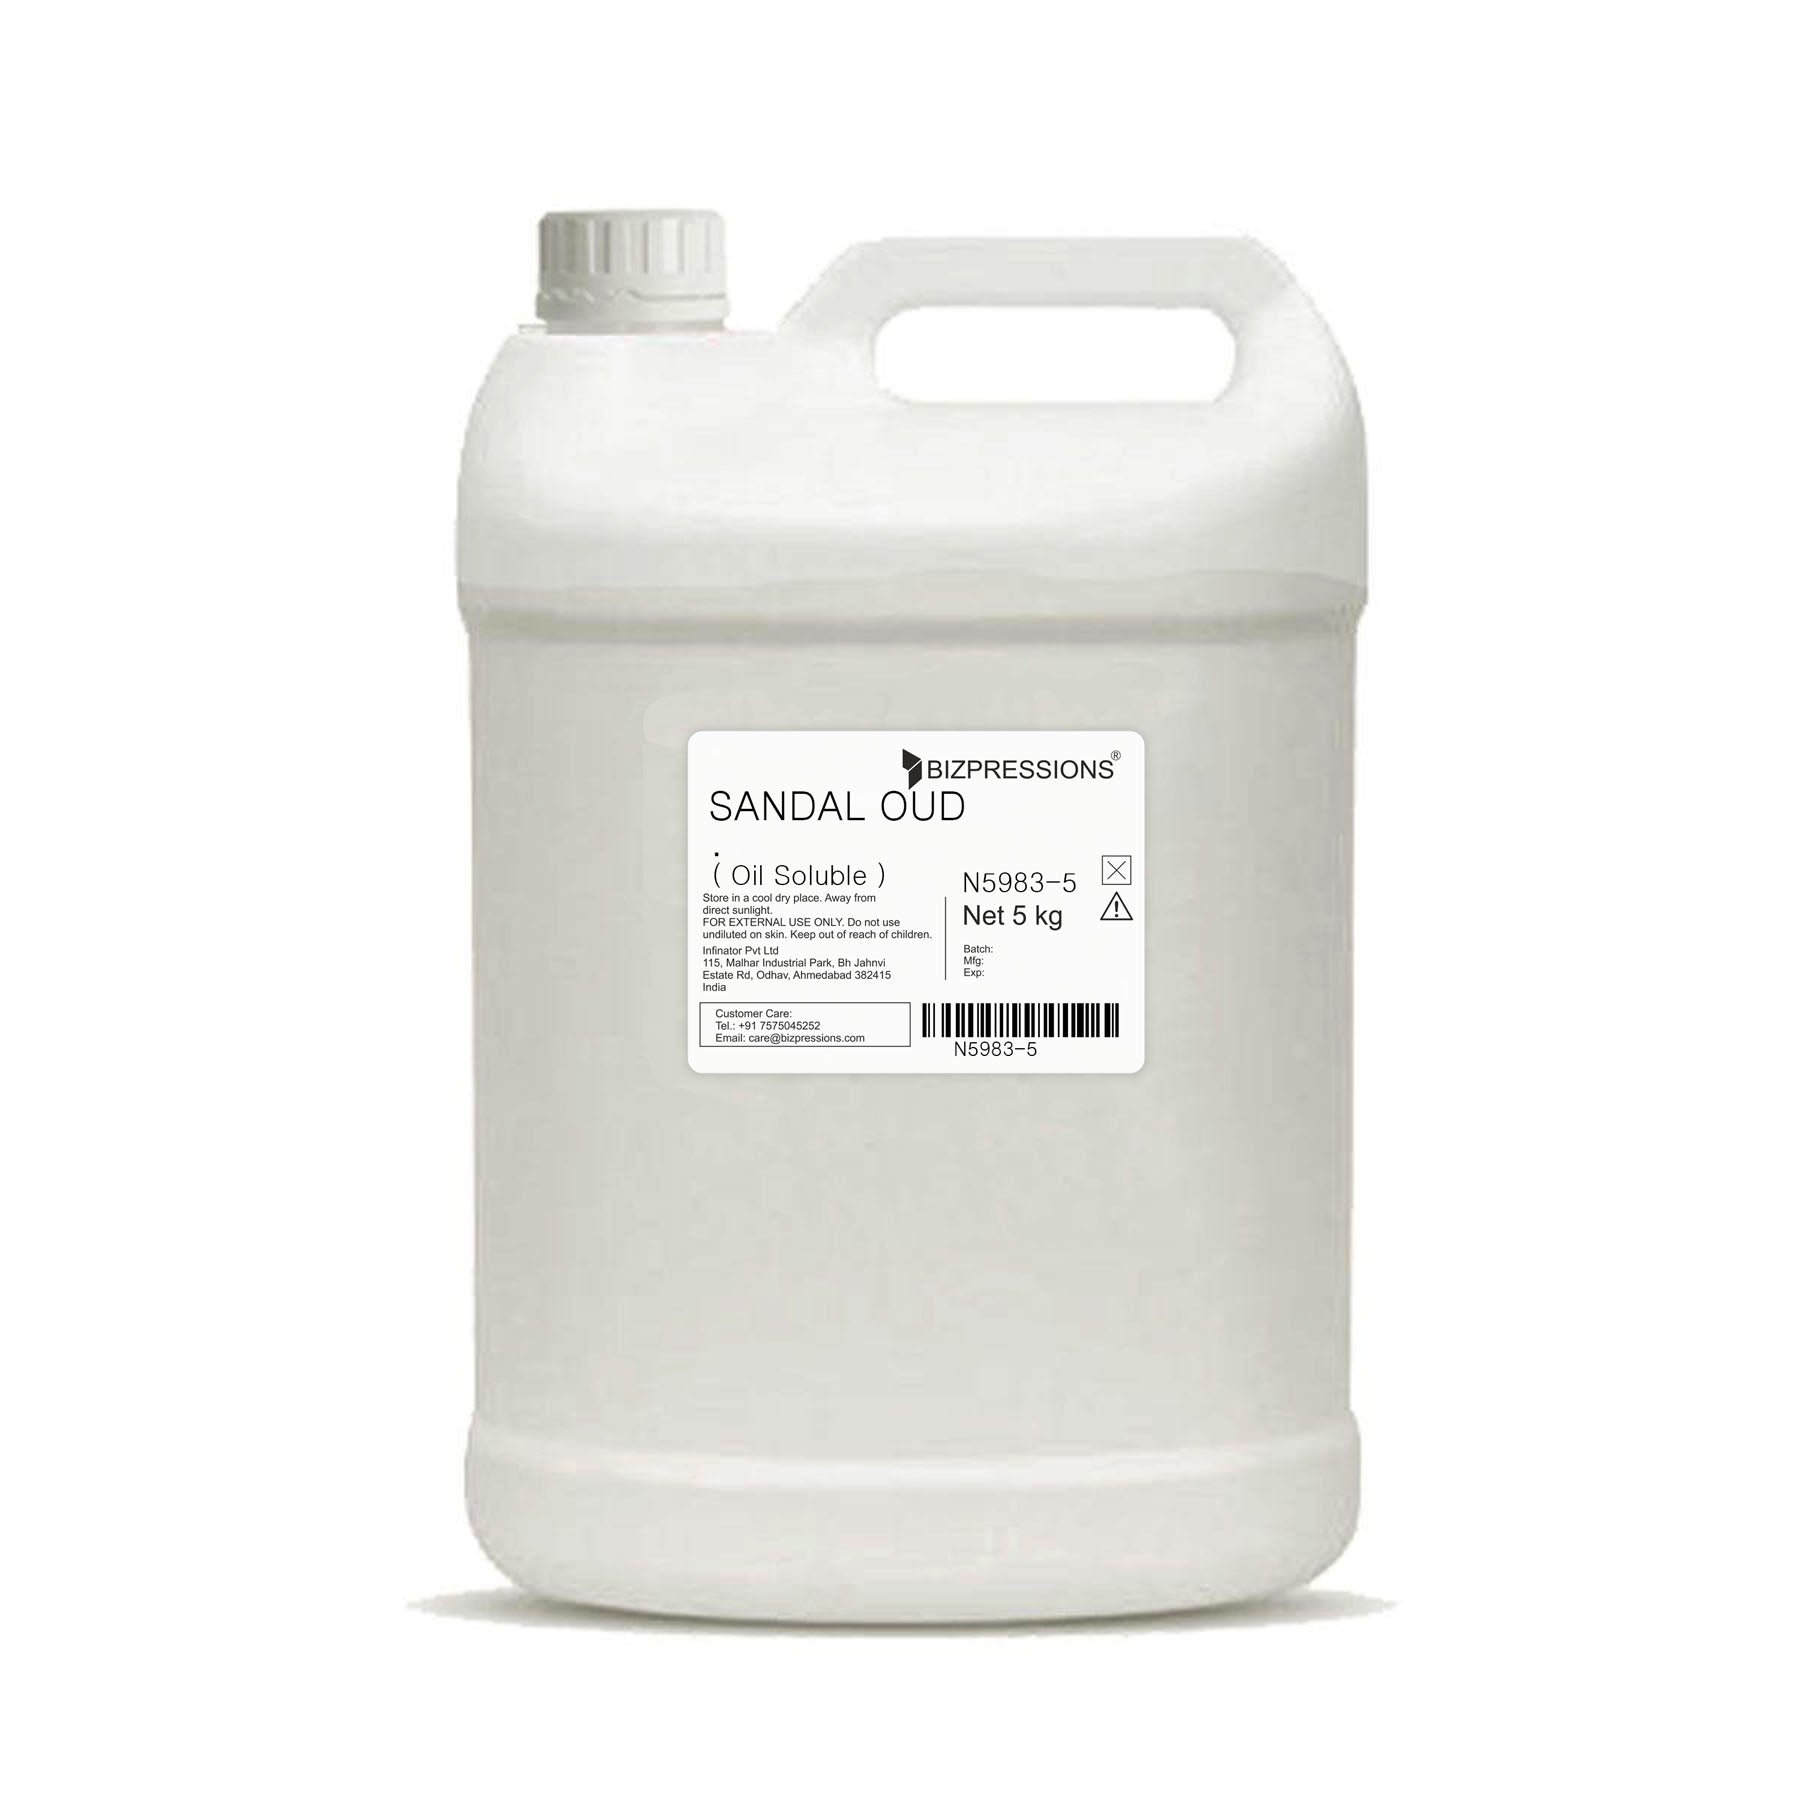 SANDAL OUD - Fragrance ( Oil Soluble ) - 5 kg